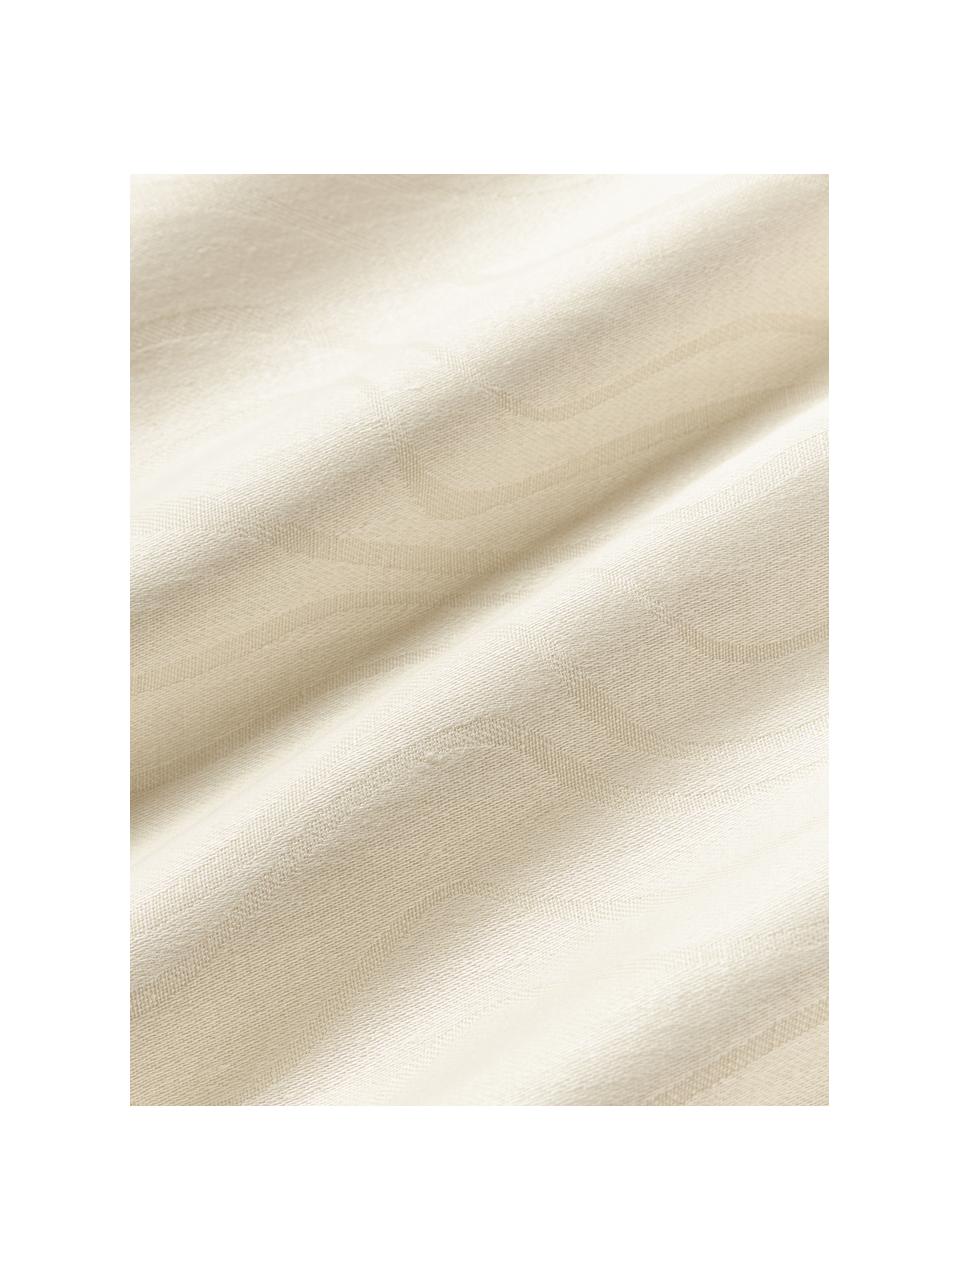 Leinen-Betttuch Malia, Off White, B 240 x L 280 cm